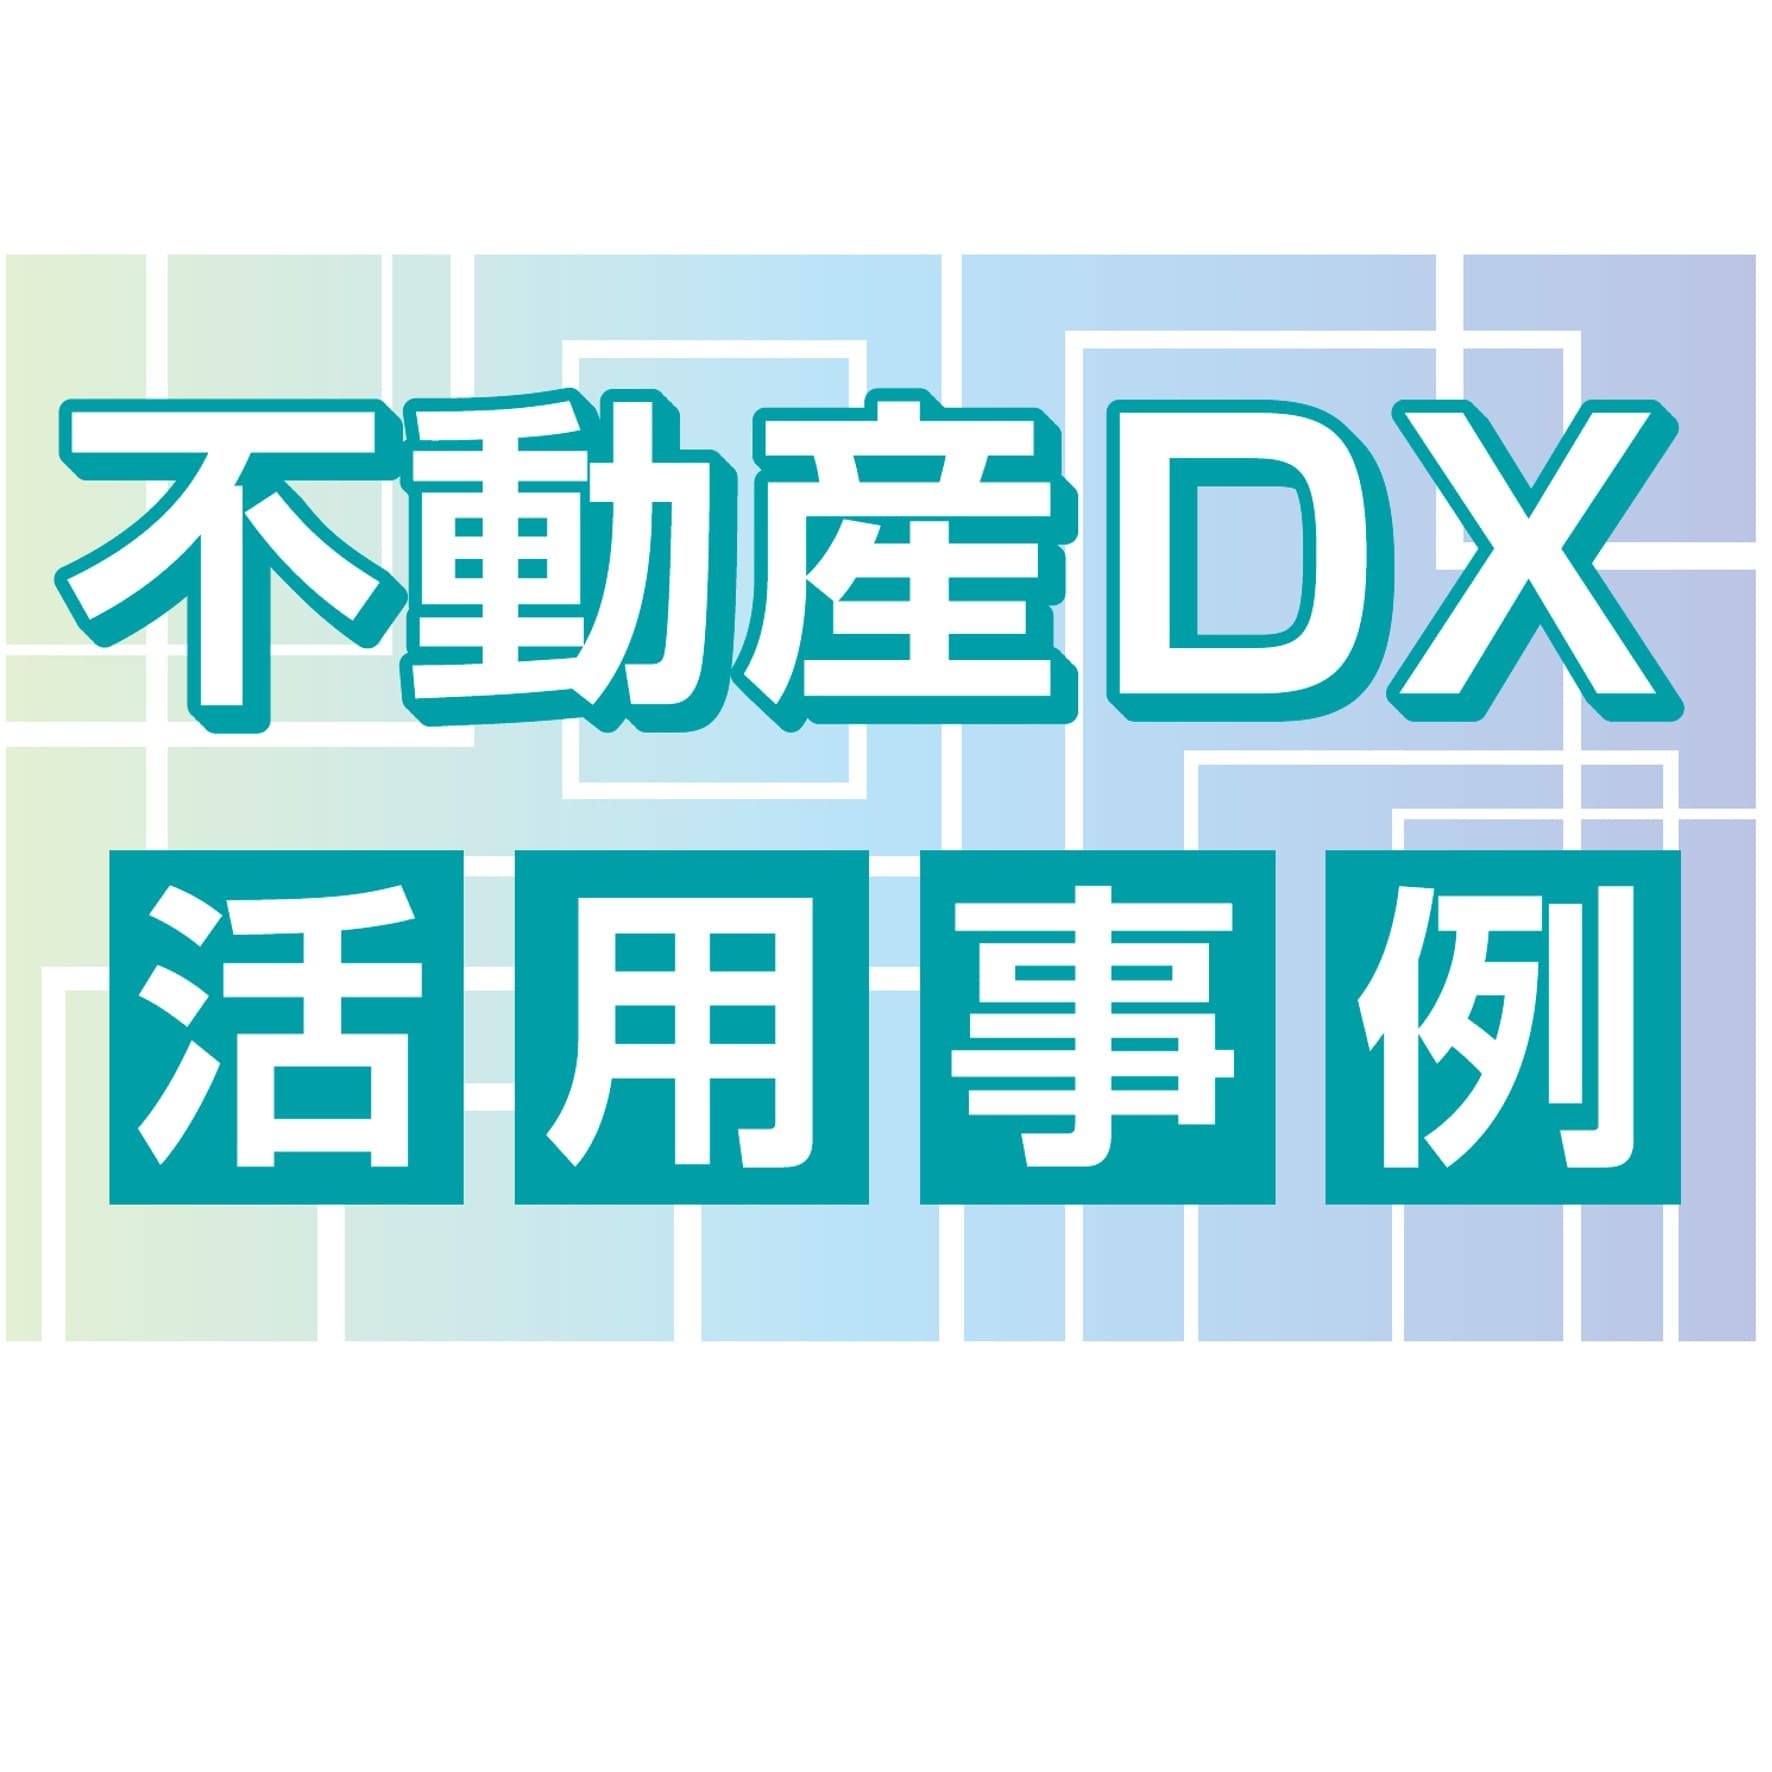 【進む不動産DX】導入事例5社から学ぶ、現場の効果